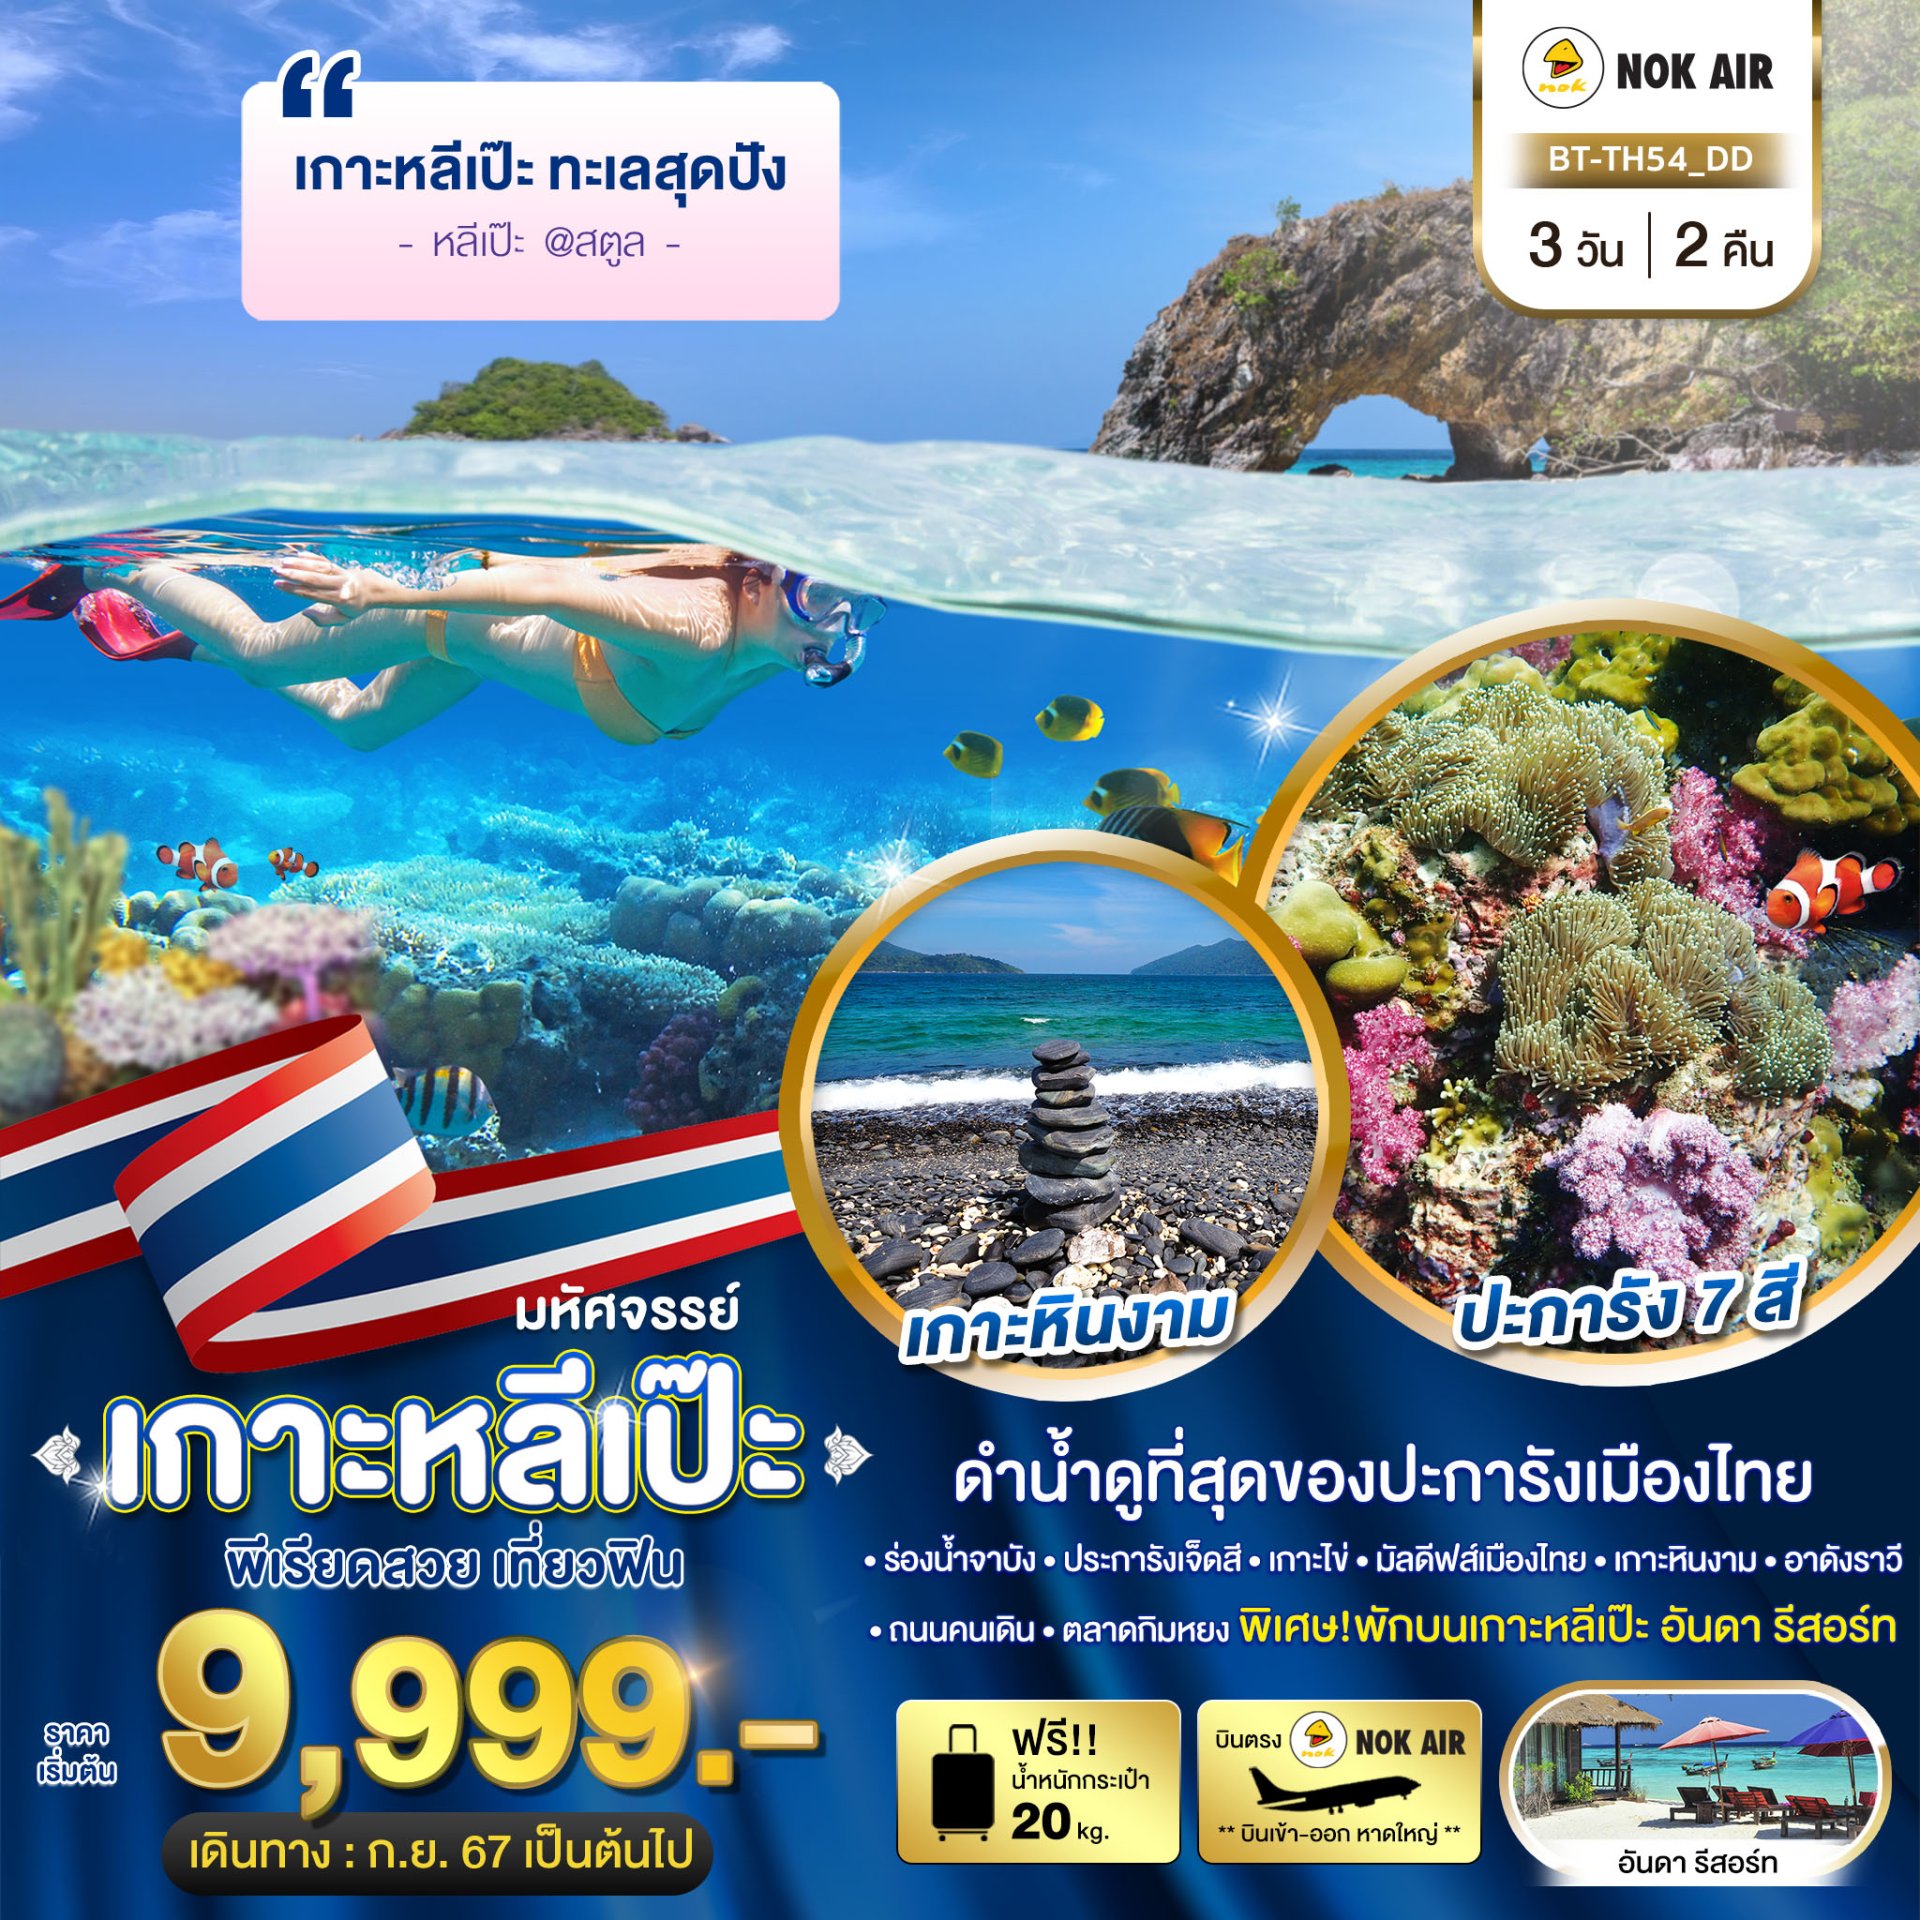 มหัศจรรย์..เกาะหลีเป๊ะ ทะเลสุดปัง ดำน้ำดูที่สุดของประการังเมืองไทย 3 วัน 2 คืน